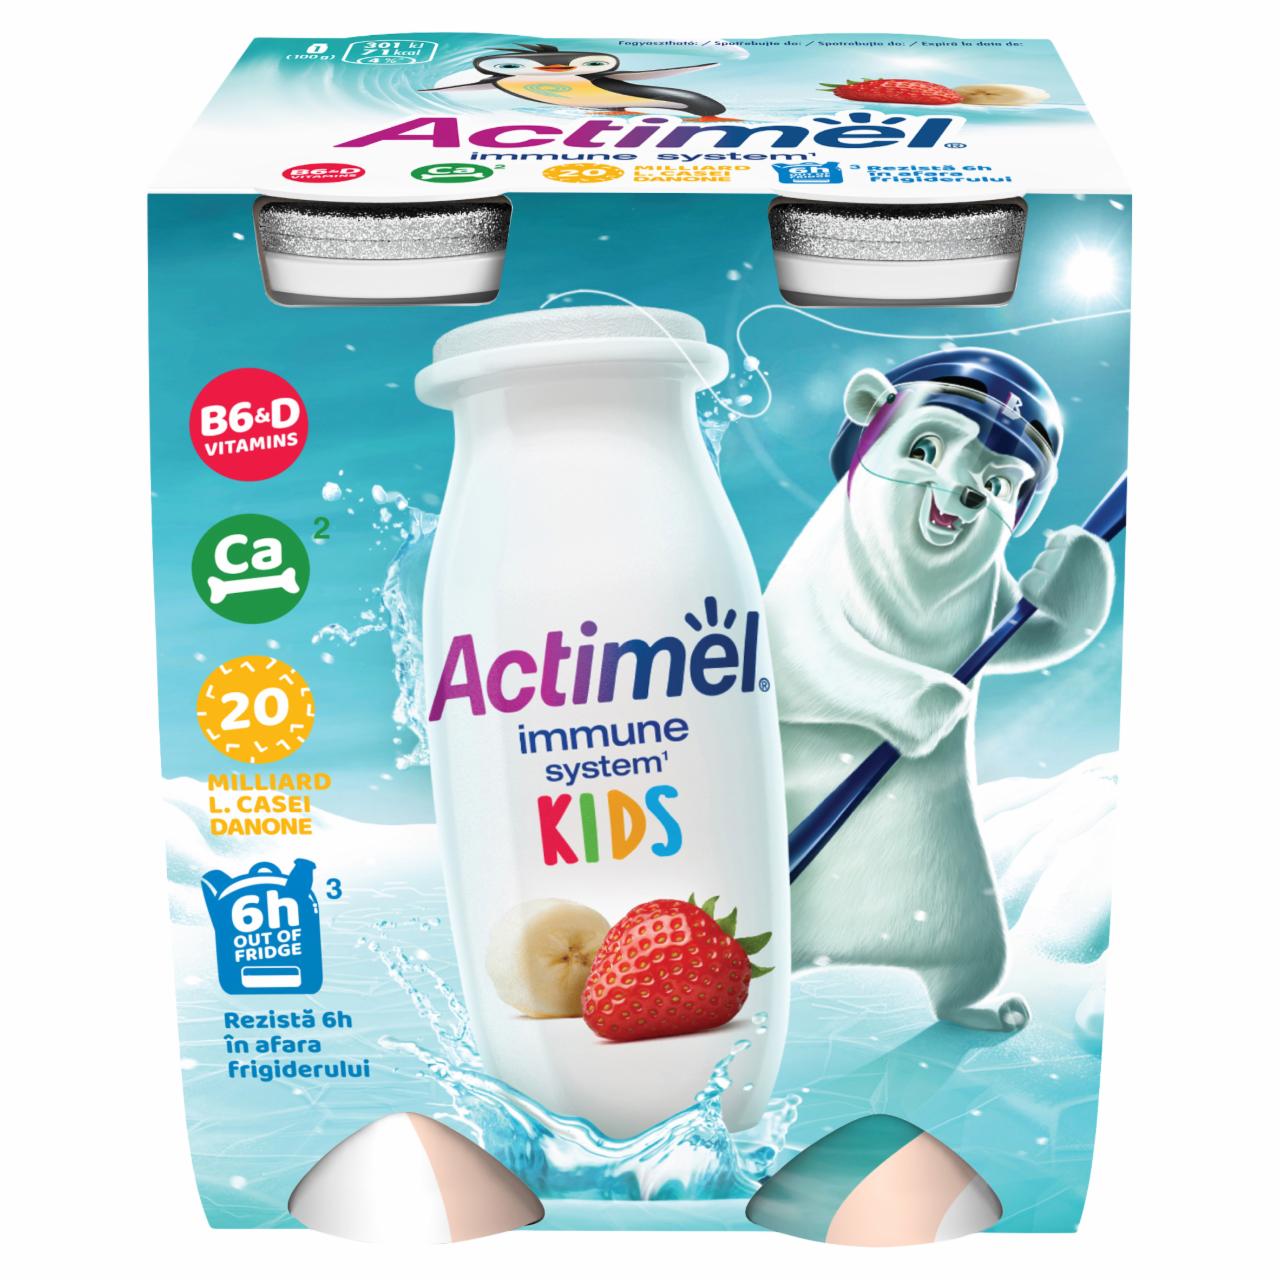 Képek - Danone Actimel Kids zsírszegény, élőflórás, eper-banánízű joghurtital 4 x 100 g (400 g)